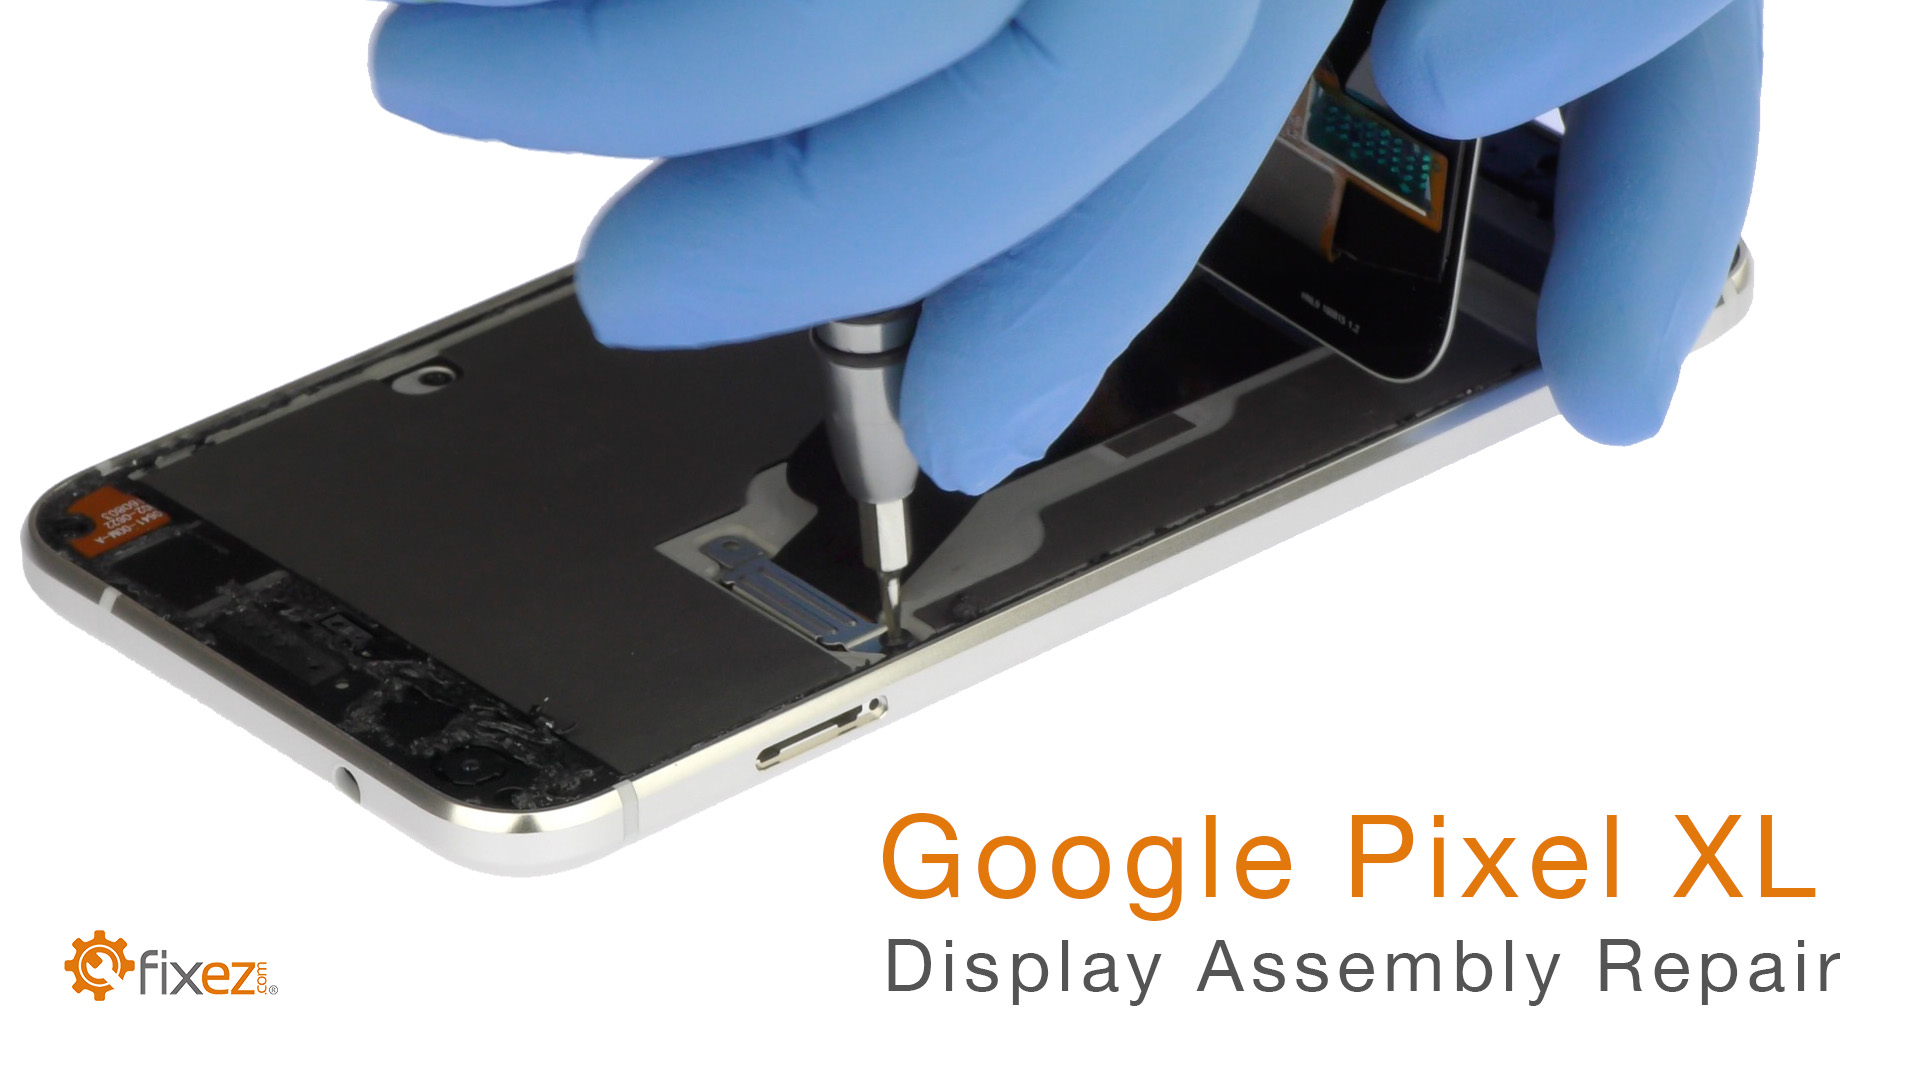 Google Pixel XL Display Assembly Repair